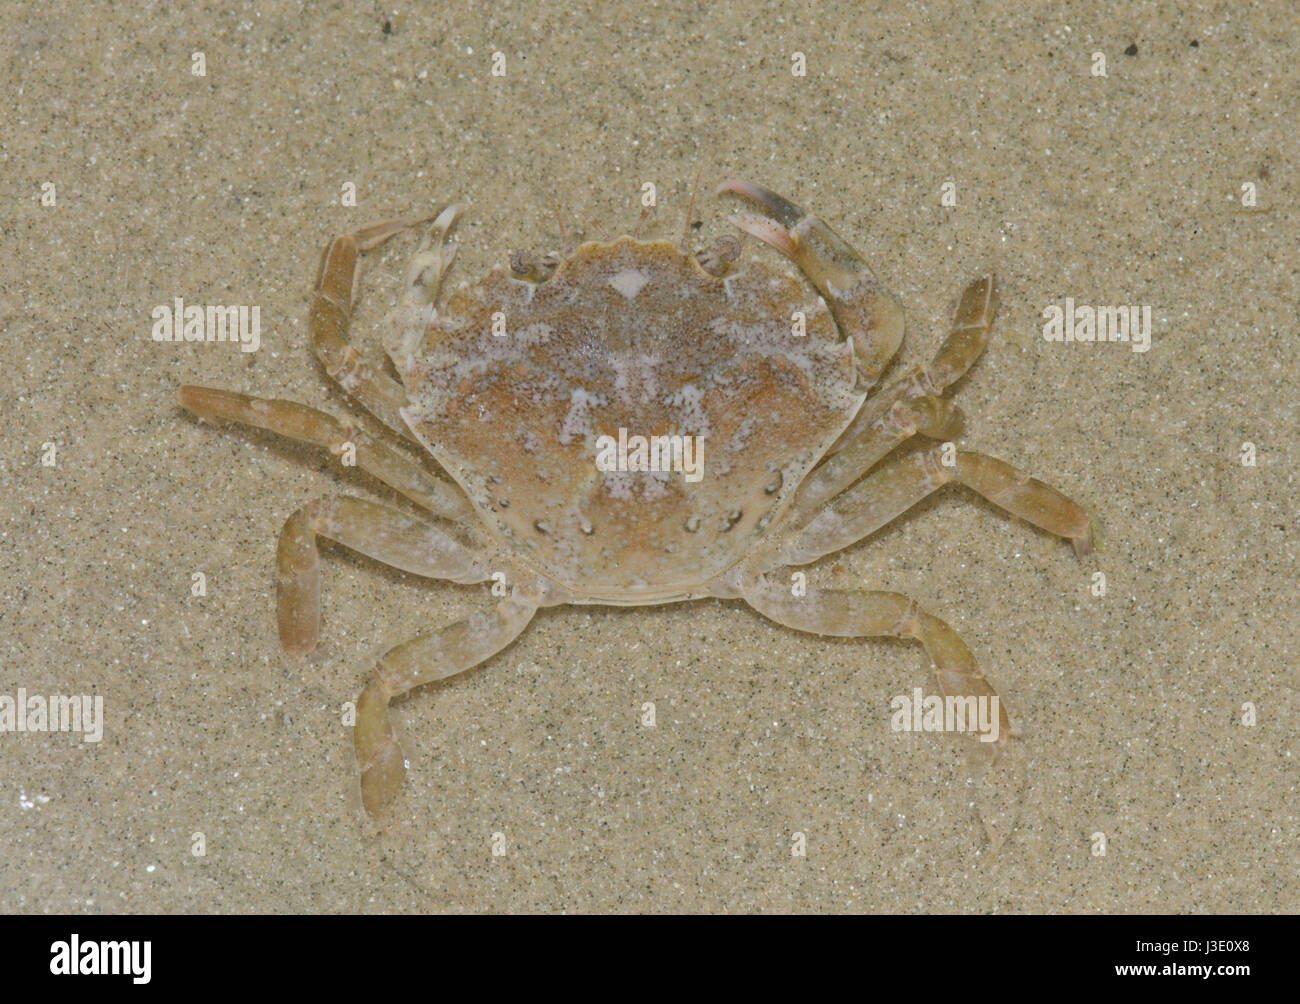 Marbled Swimming Crab (Liocarcinus marmoreus) Portunidae. Sussex, UK Stock Photo